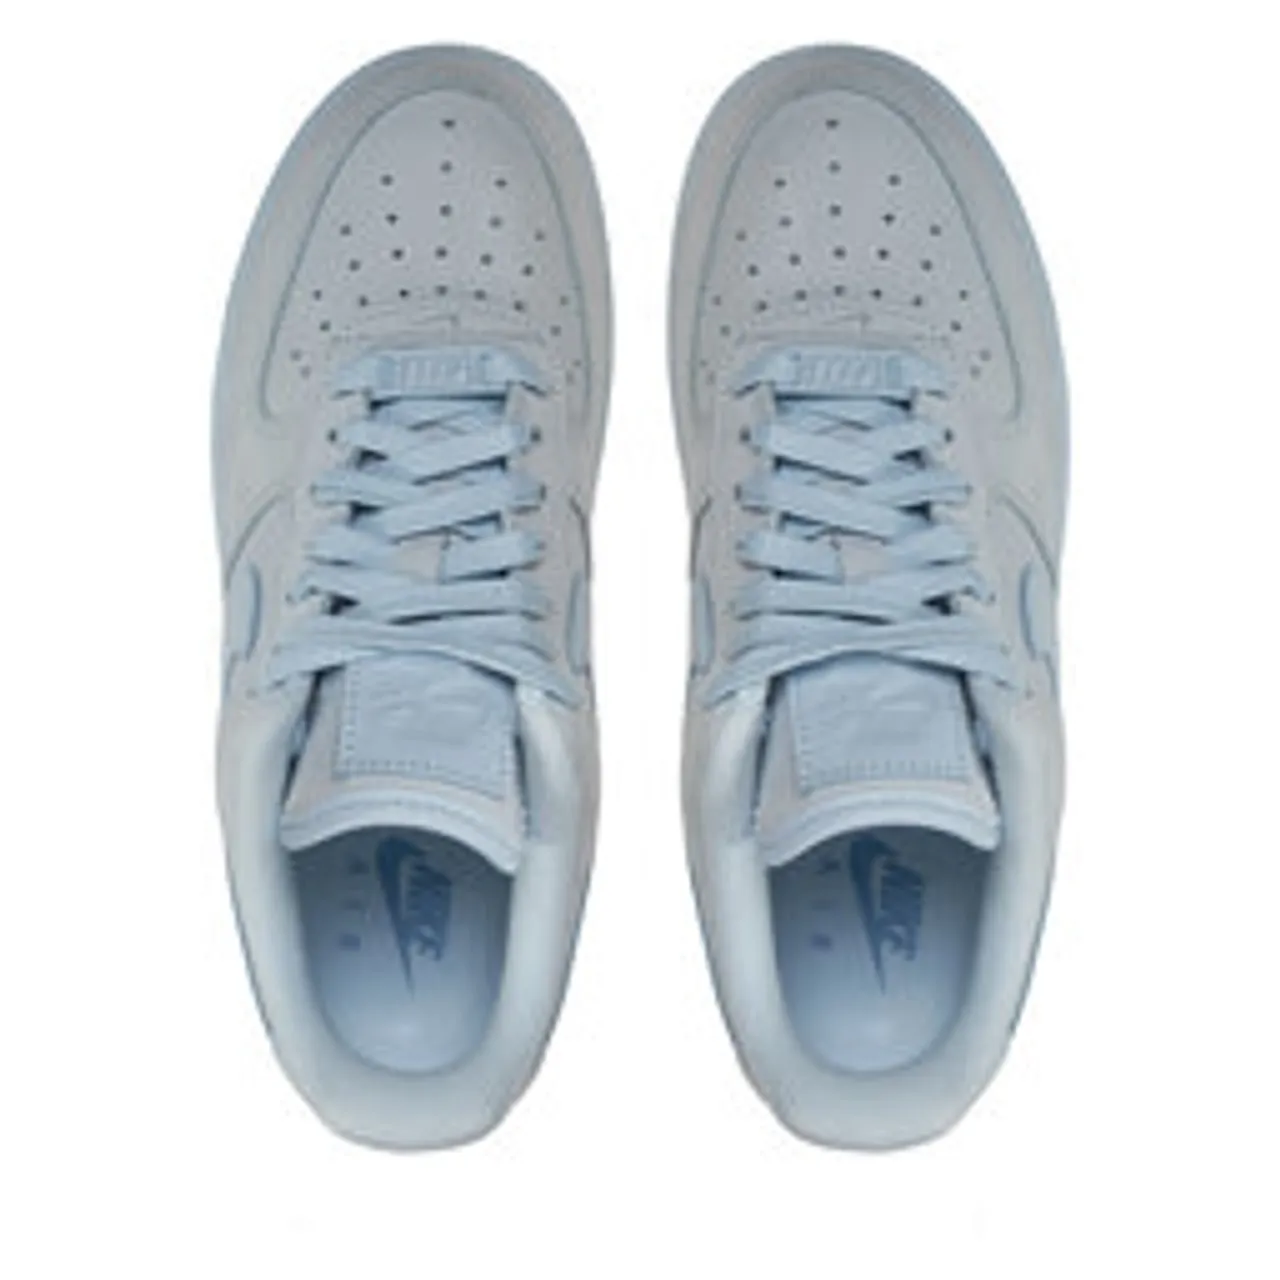 Sneakers Nike Air Force 1 DZ2786-400 Blau